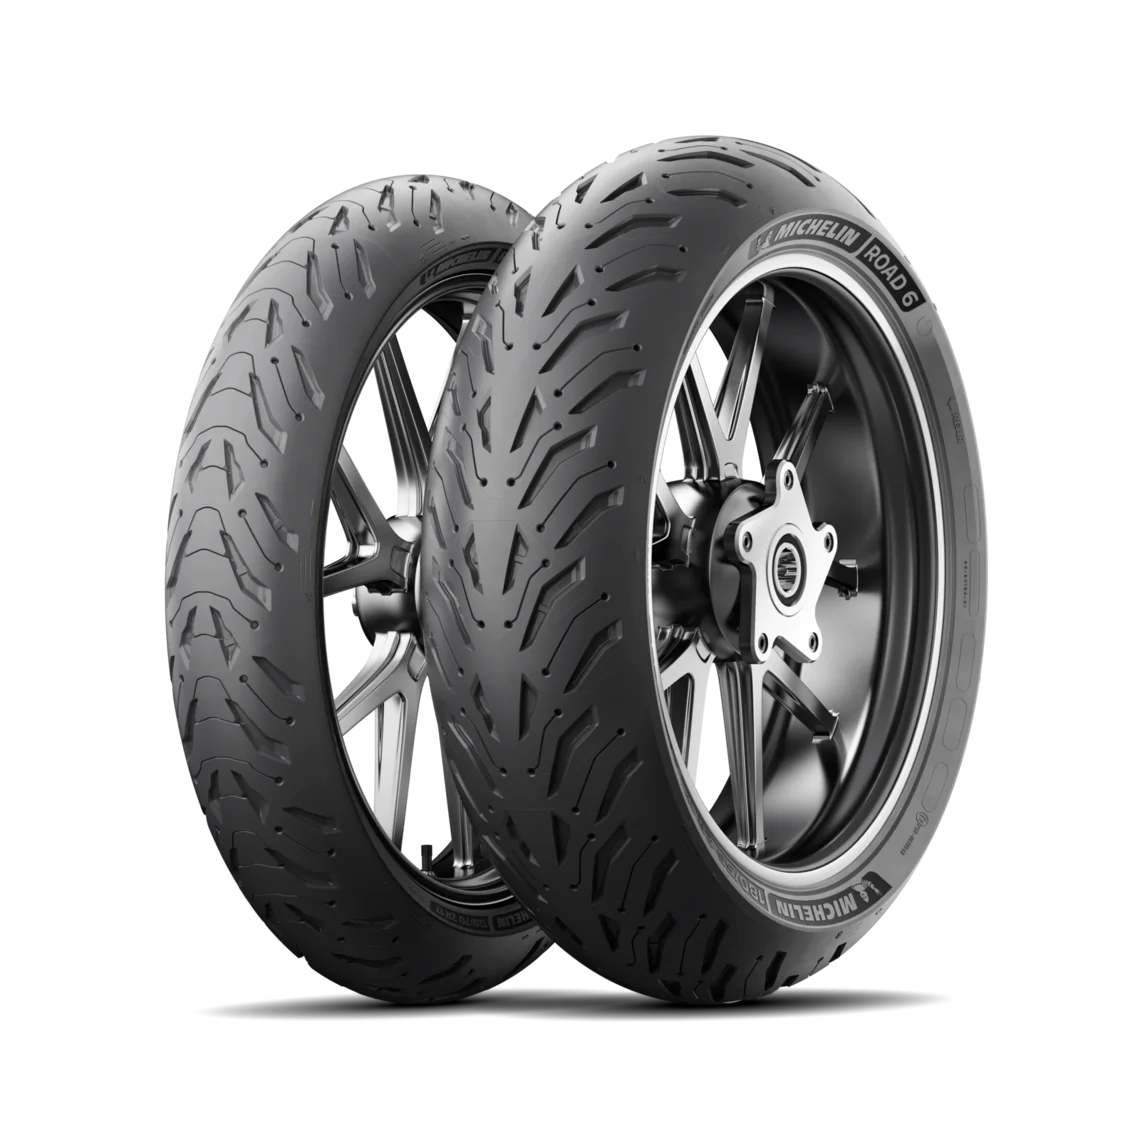 Michelin Michelin 120/70 ZR19 60W PILOT ROAD 6 pneumatici nuovi Estivo 